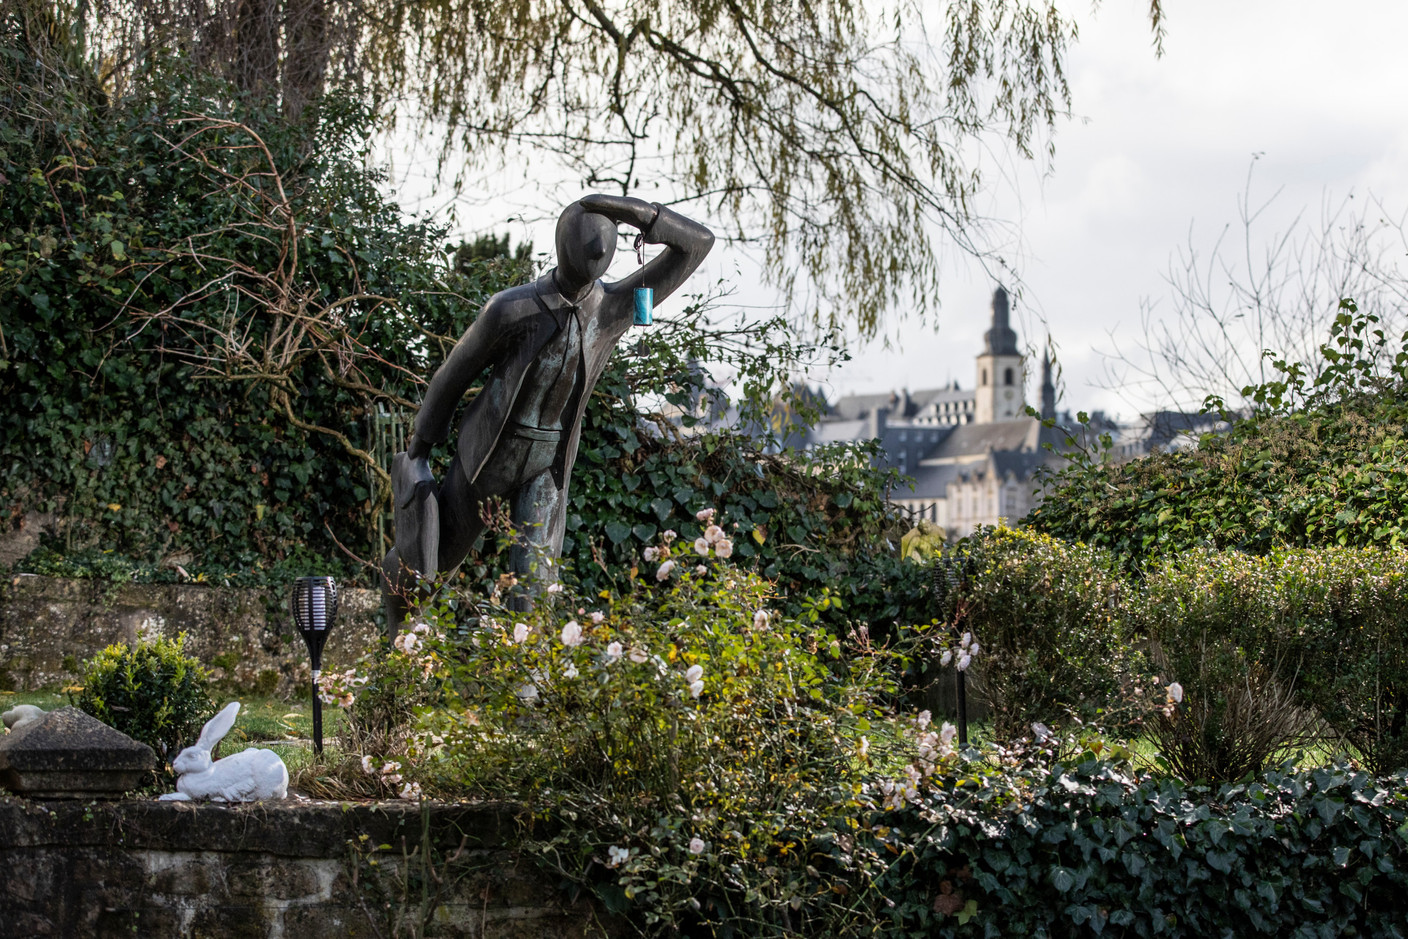 Le jardin bénéficie d’une vue sur la vieille ville, un cadre privilégié pour se ressourcer au quotidien. (Photo: Guy Wolff/ Maison Moderne)